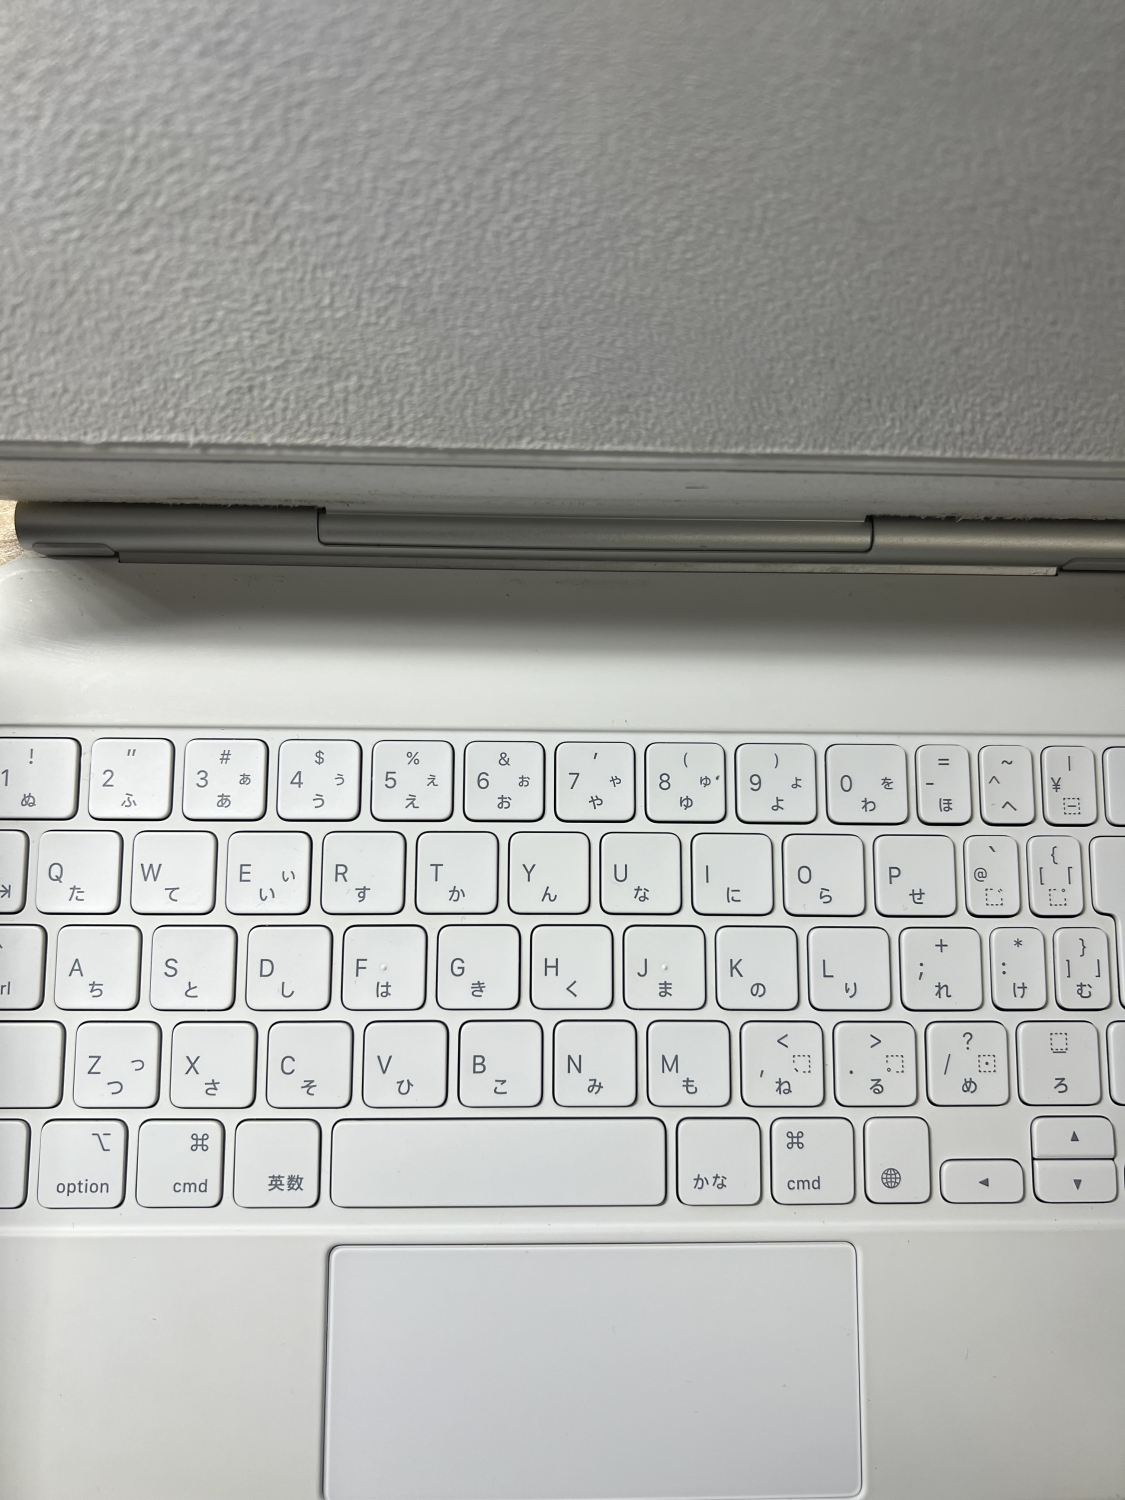 AppleだからこそのiPadに対しての最適なトラックパッドと打鍵感のよいキーボード